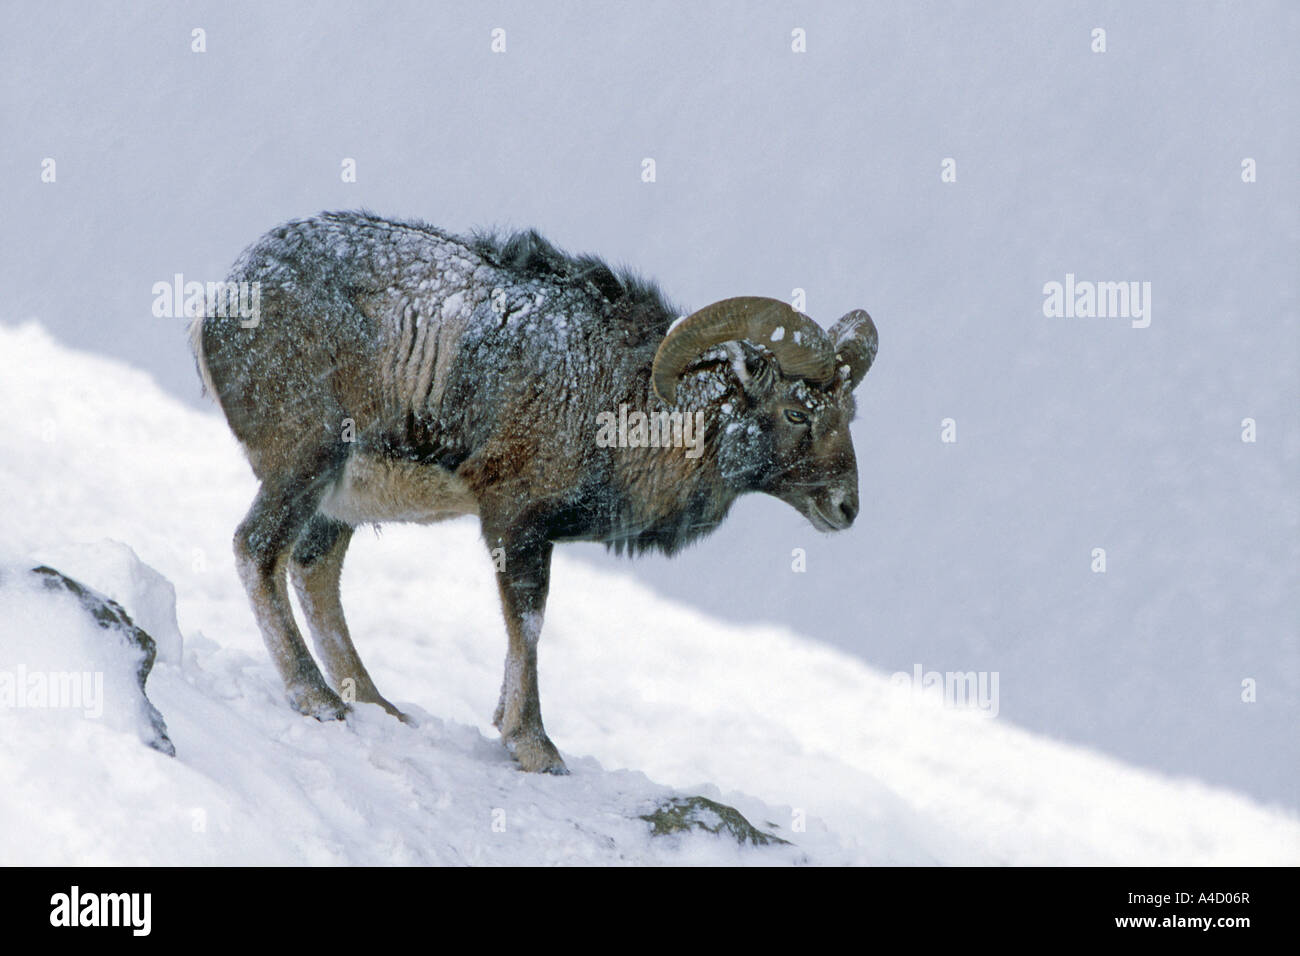 Mouflon (Ovis ammon musimon, Ovis musimon) in snow. Austria, January Stock Photo